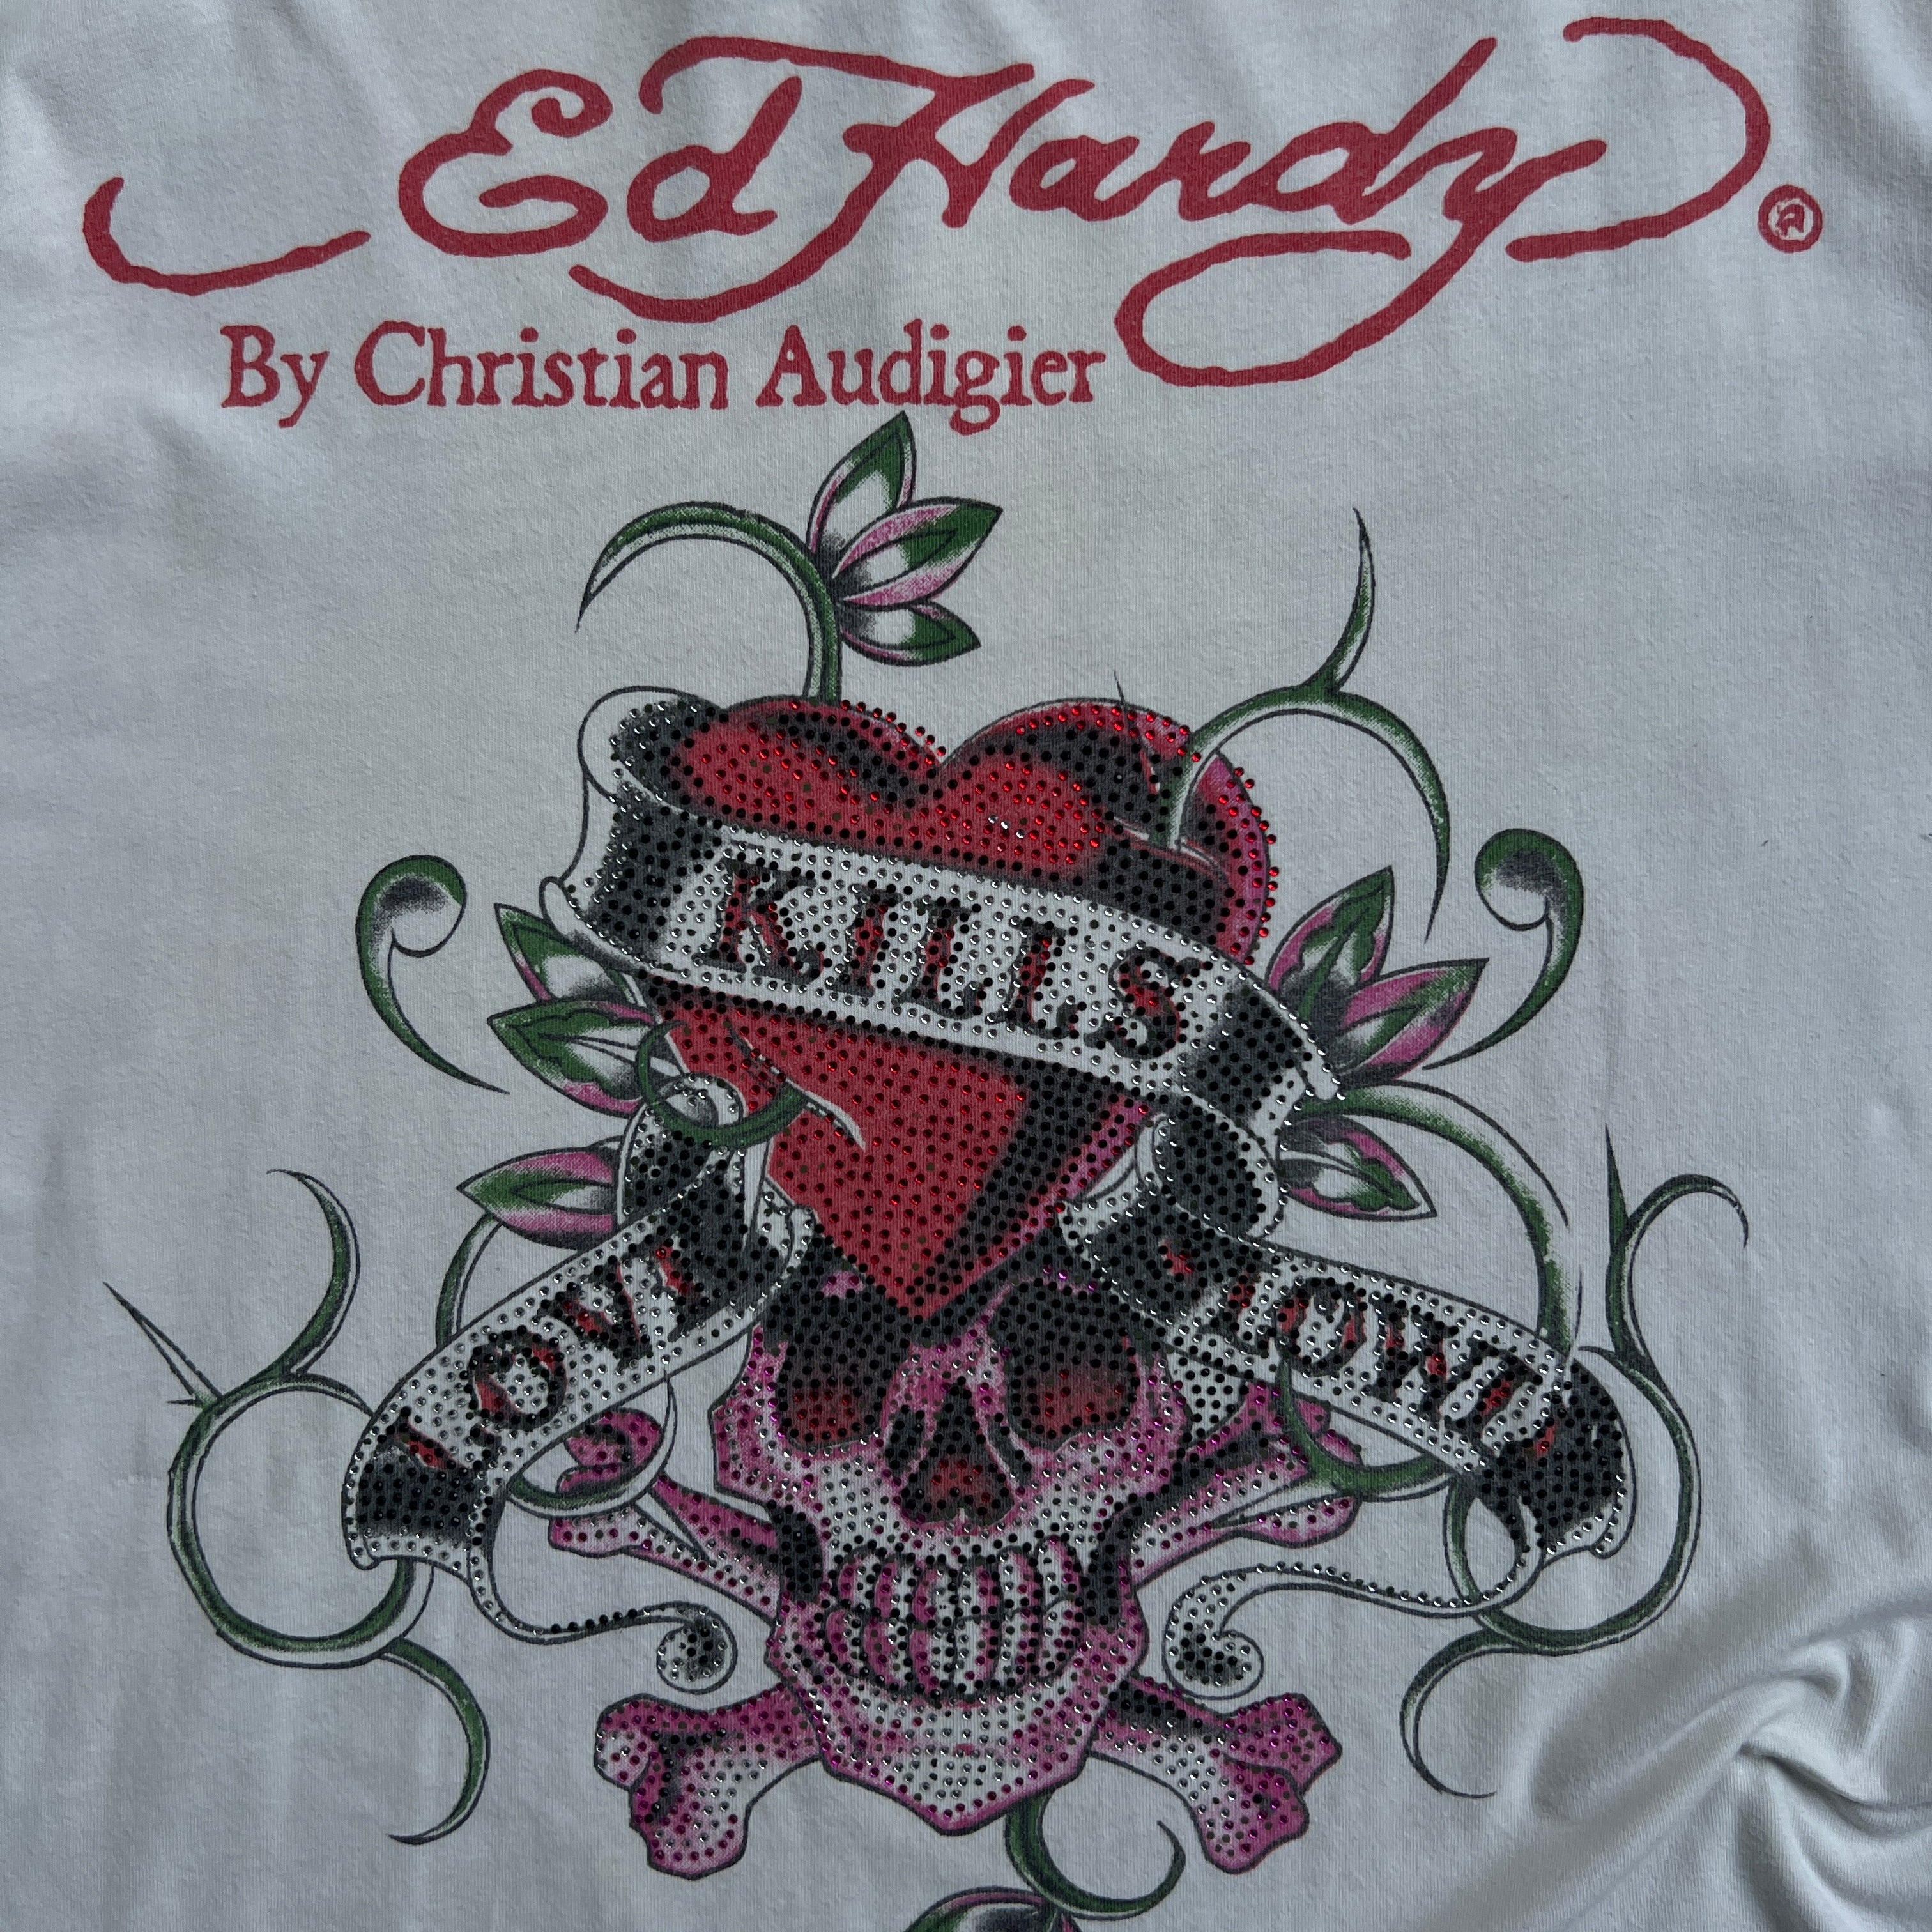 Ed Hardy "Love Kills Slowly" T-Shirt